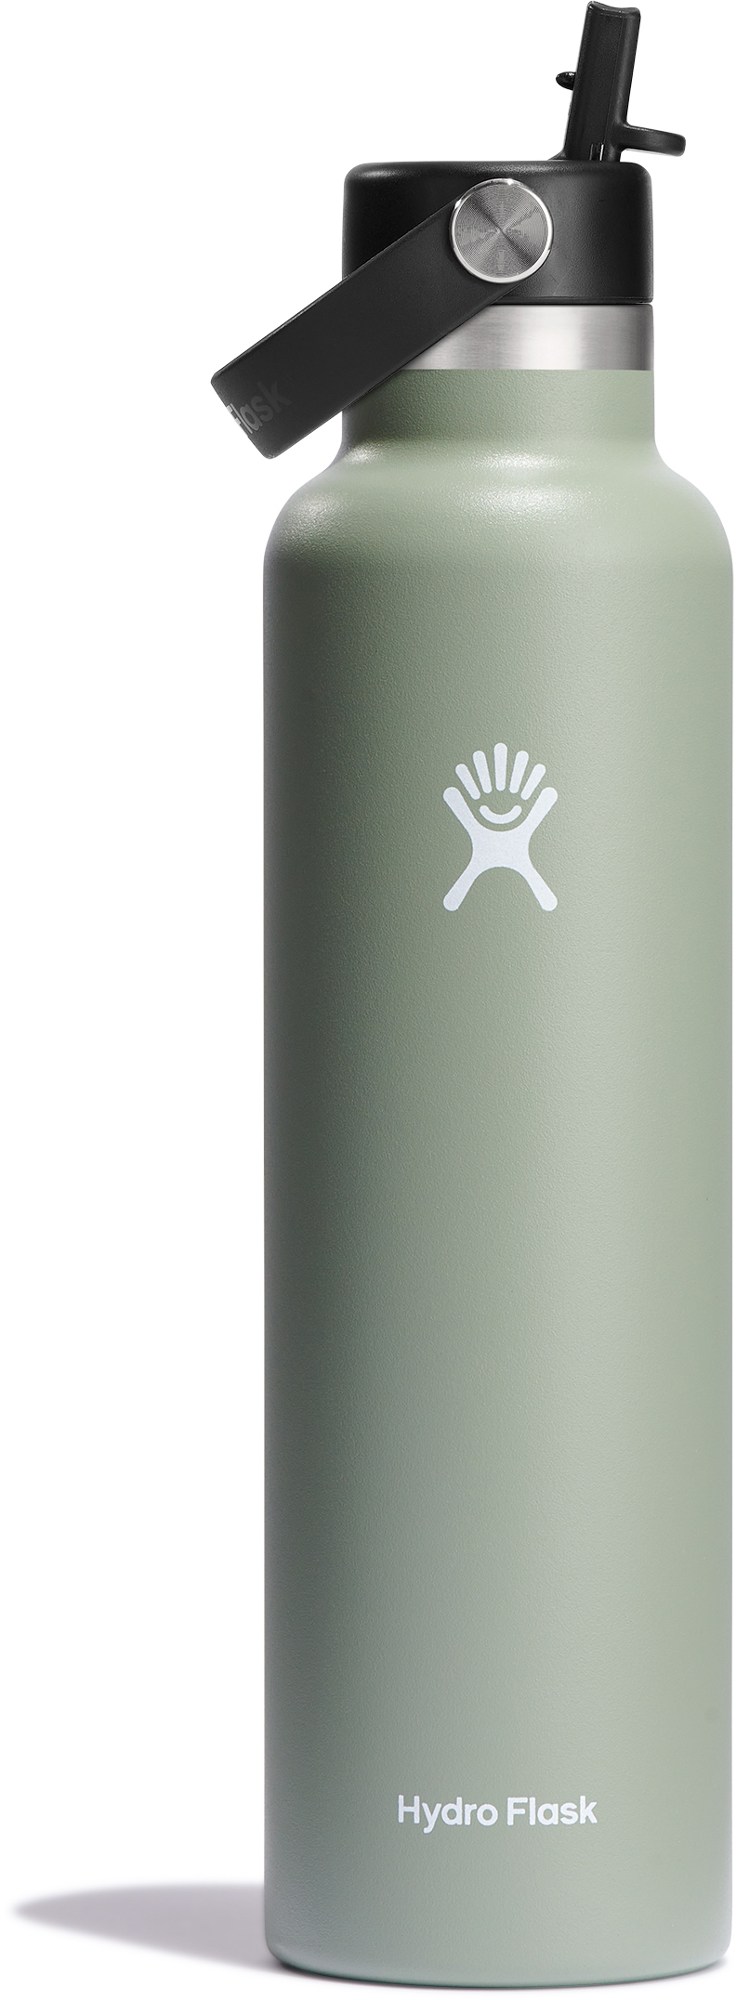 Вакуумная бутылка для воды со стандартным горлышком и гибкой соломенной крышкой — 24 эт. унция Hydro Flask, зеленый